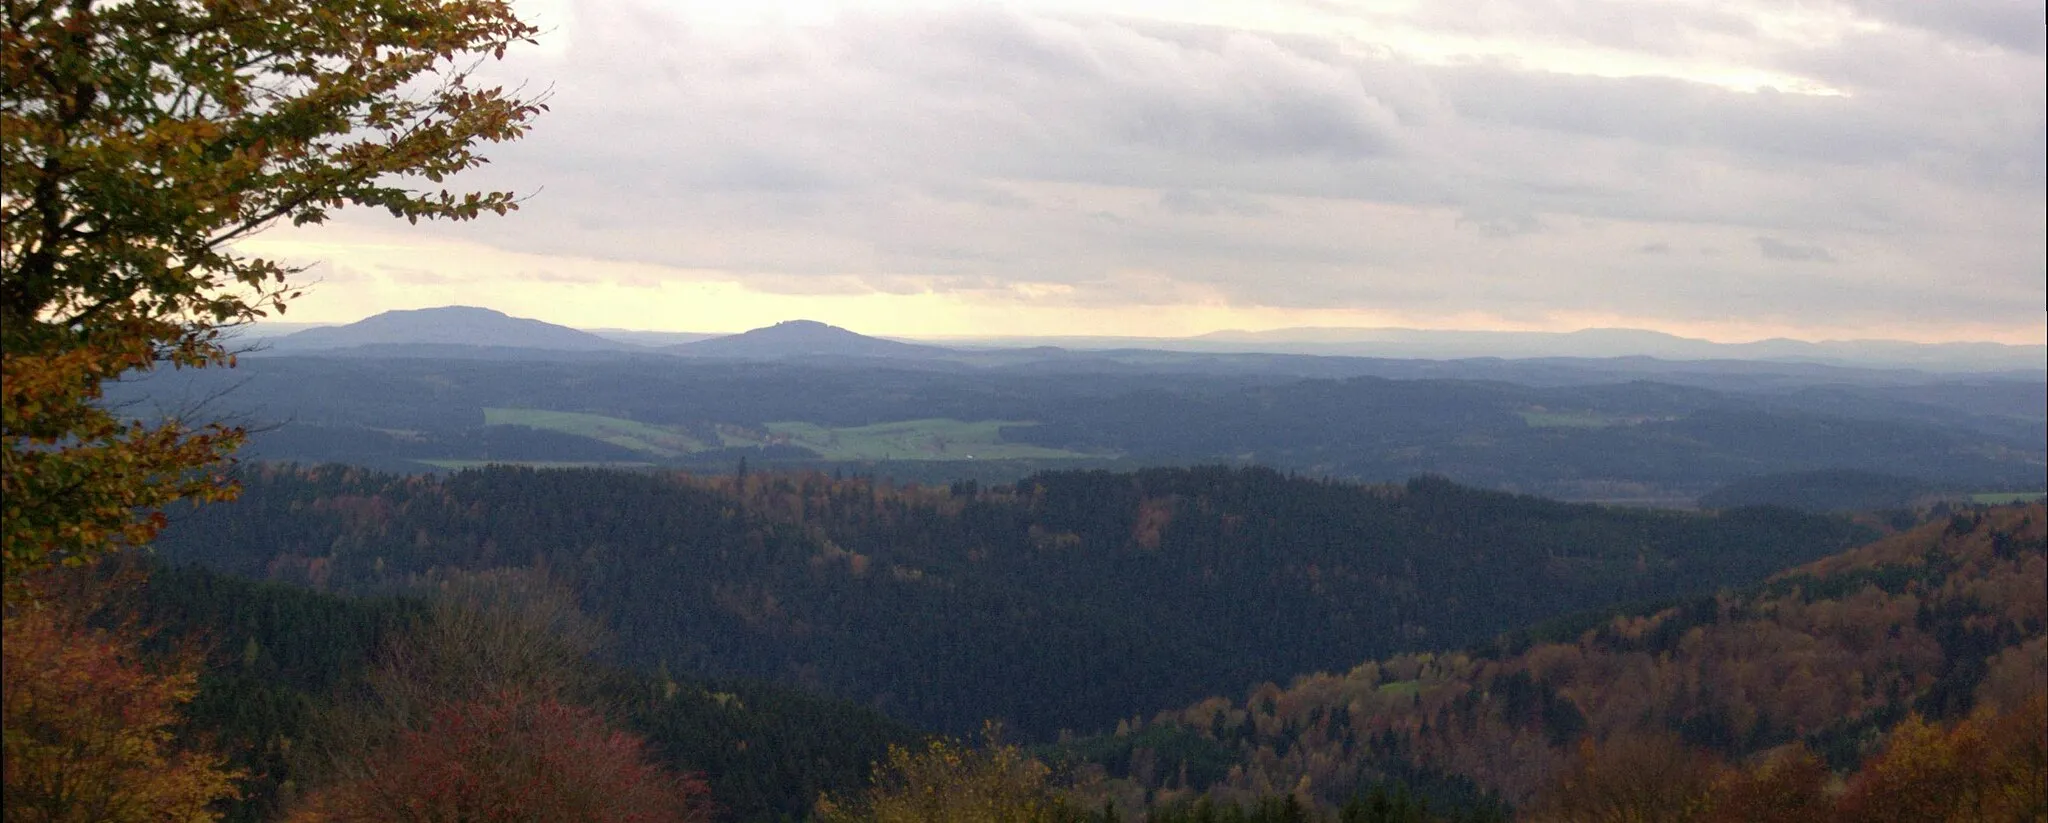 Photo showing: Blick vom Simmersberg (781 m) im Thüringer Schiefergebirge auf die 24 km entfernten Gleichberge (679 und 641 m). Rechts im Hintergrund die Hohe Rhön mit dem 67 km entfernten, 928 m hohen Kreuzberg, unmittelbar davor (halbrechts mittig) der 7 km entfernte Ratscher Bergsee. Im Vordergrund der 621 m hohe, nur 3 km entfernte Wachberg